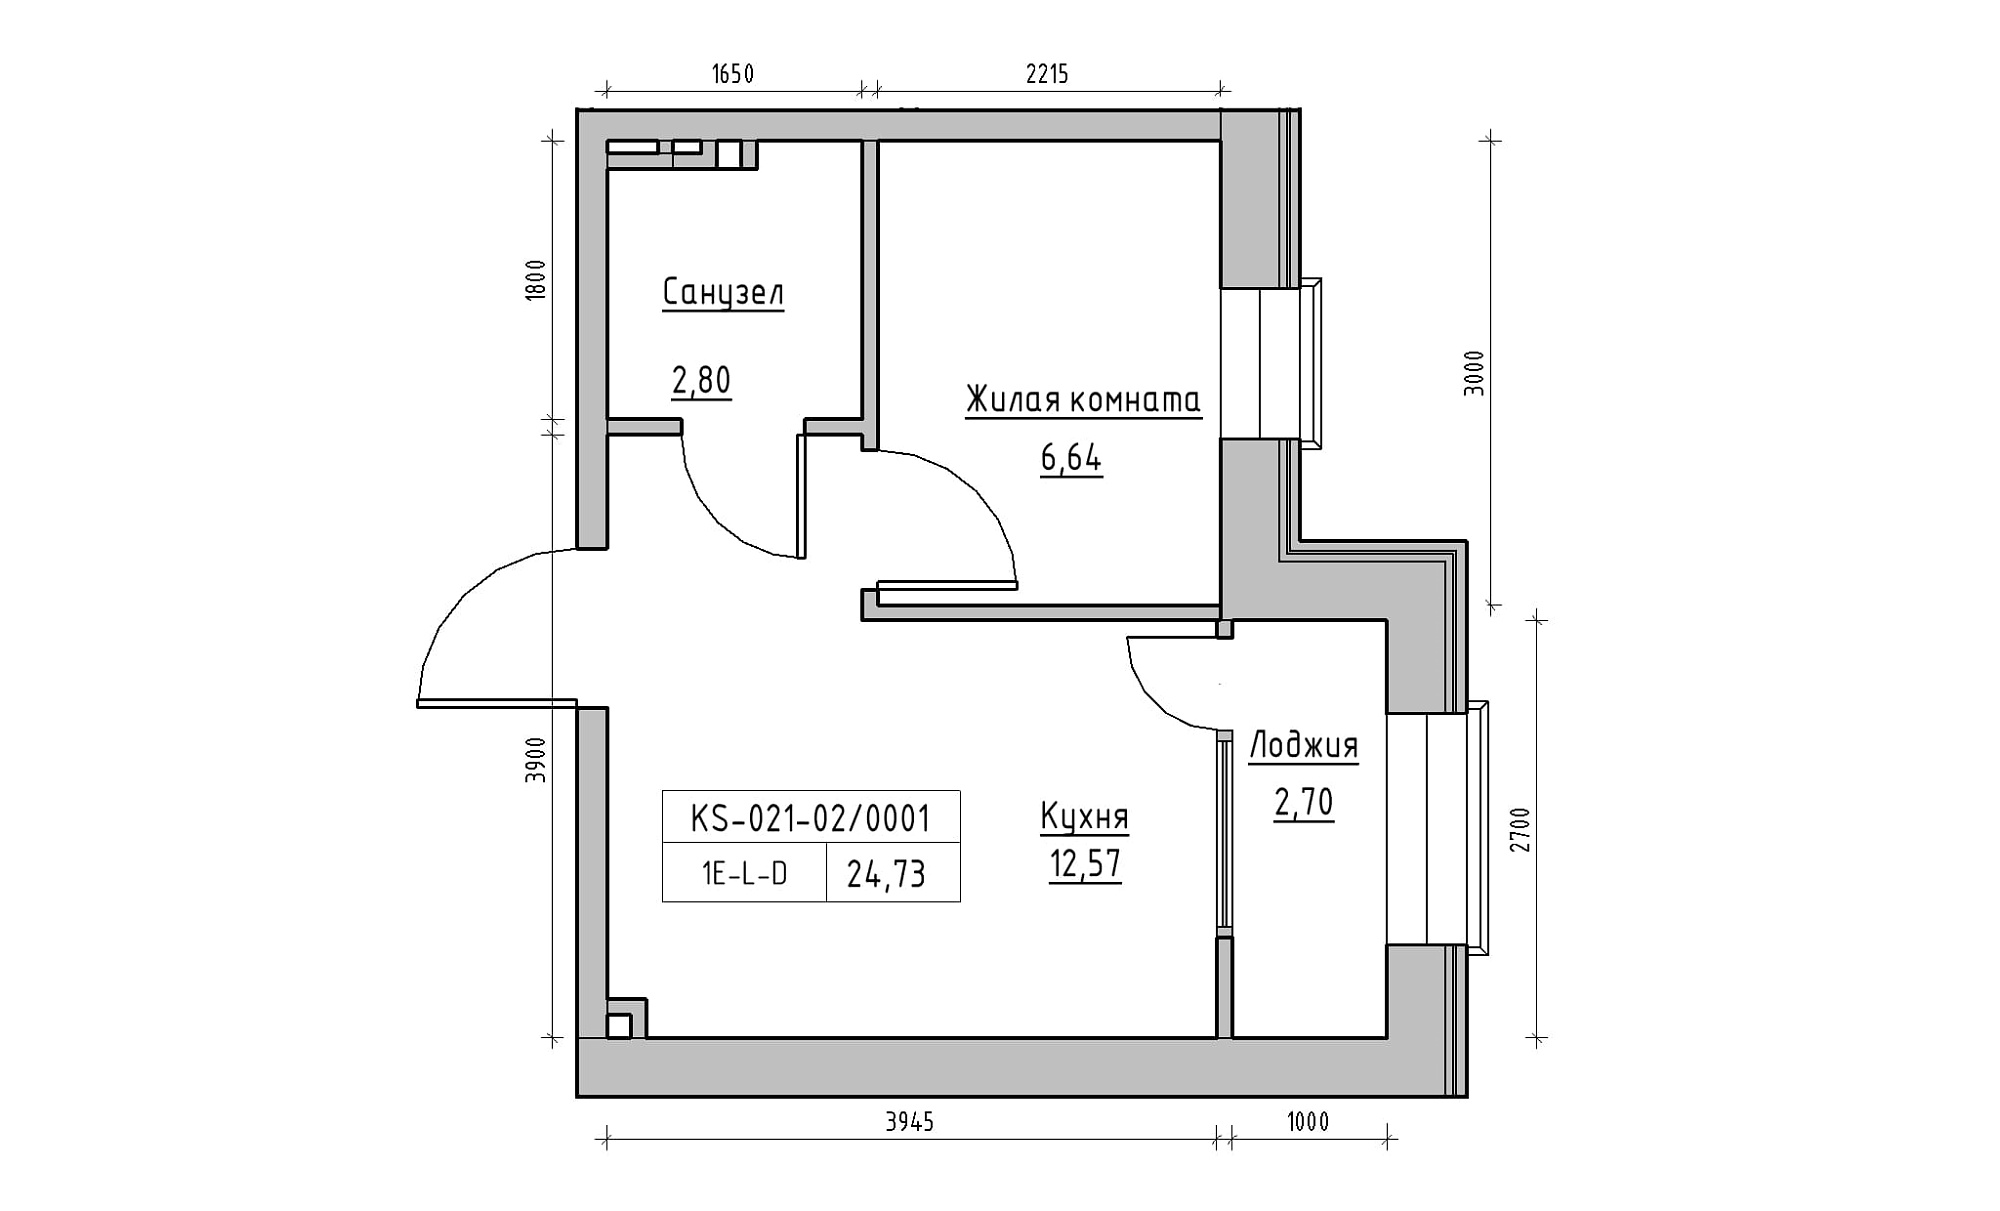 Планировка 1-к квартира площей 24.73м2, KS-021-02/0001.